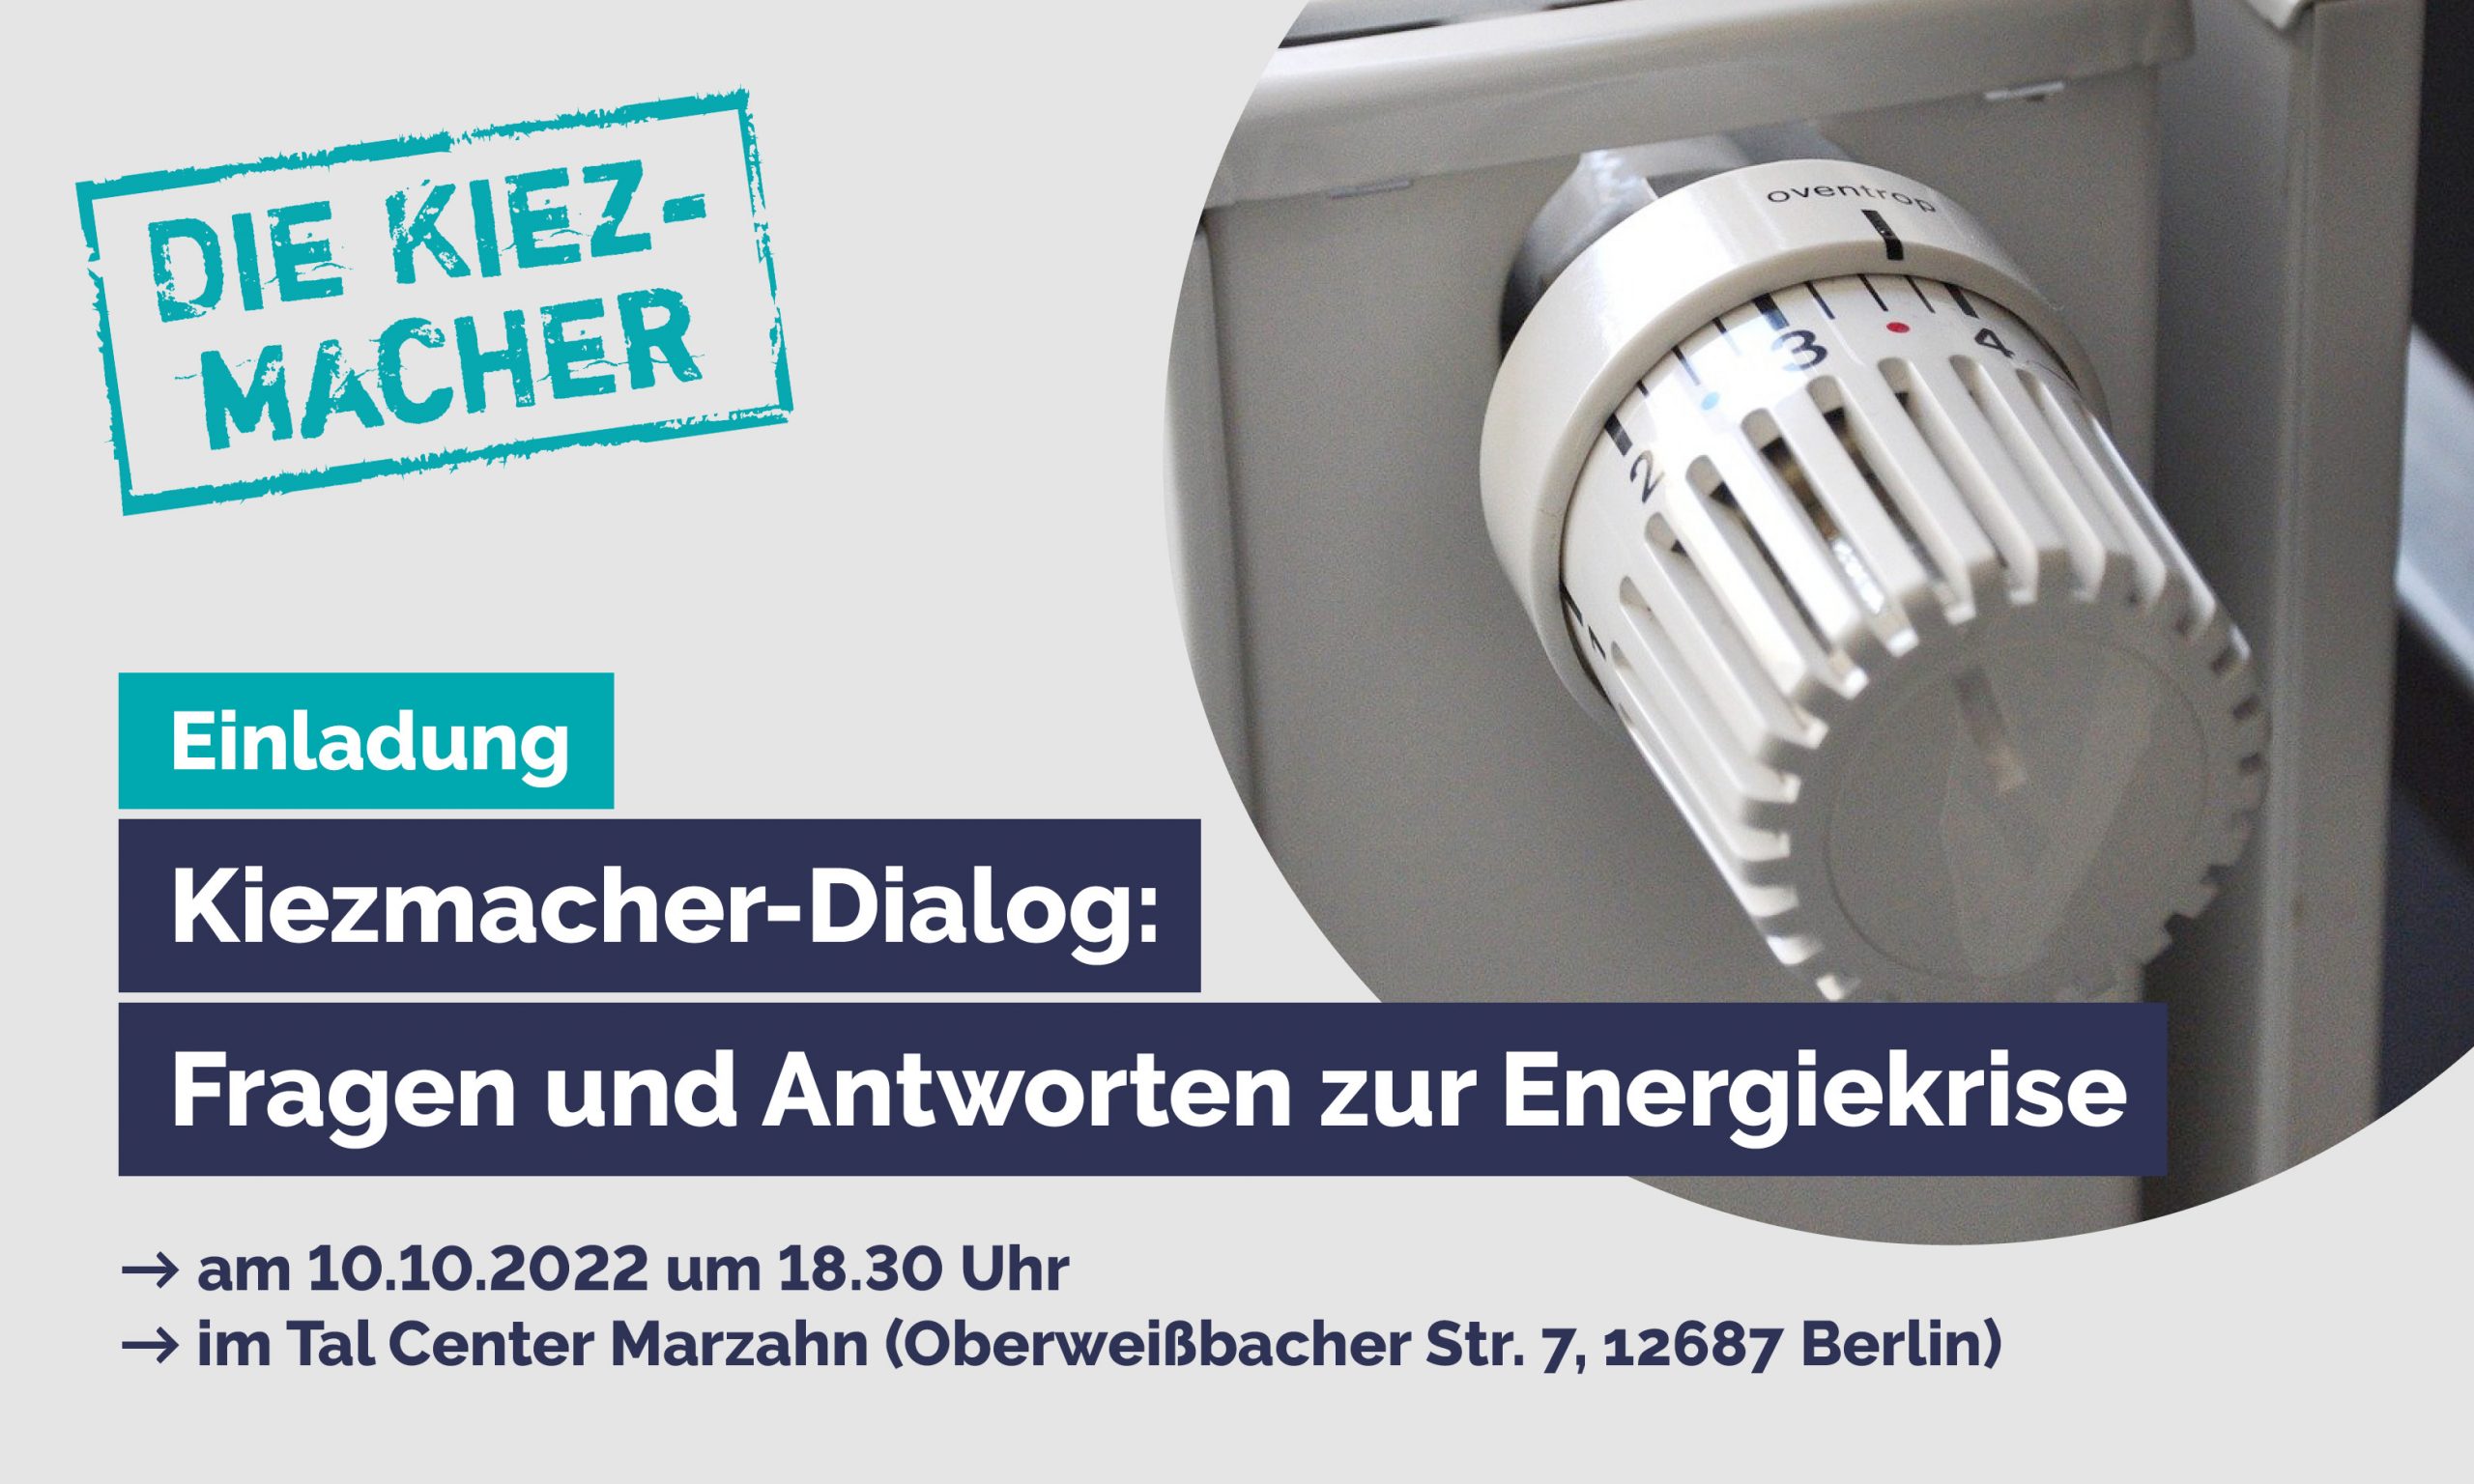 Kiezmacher-Dialog “Fragen und Antworten zur Energiekrise”